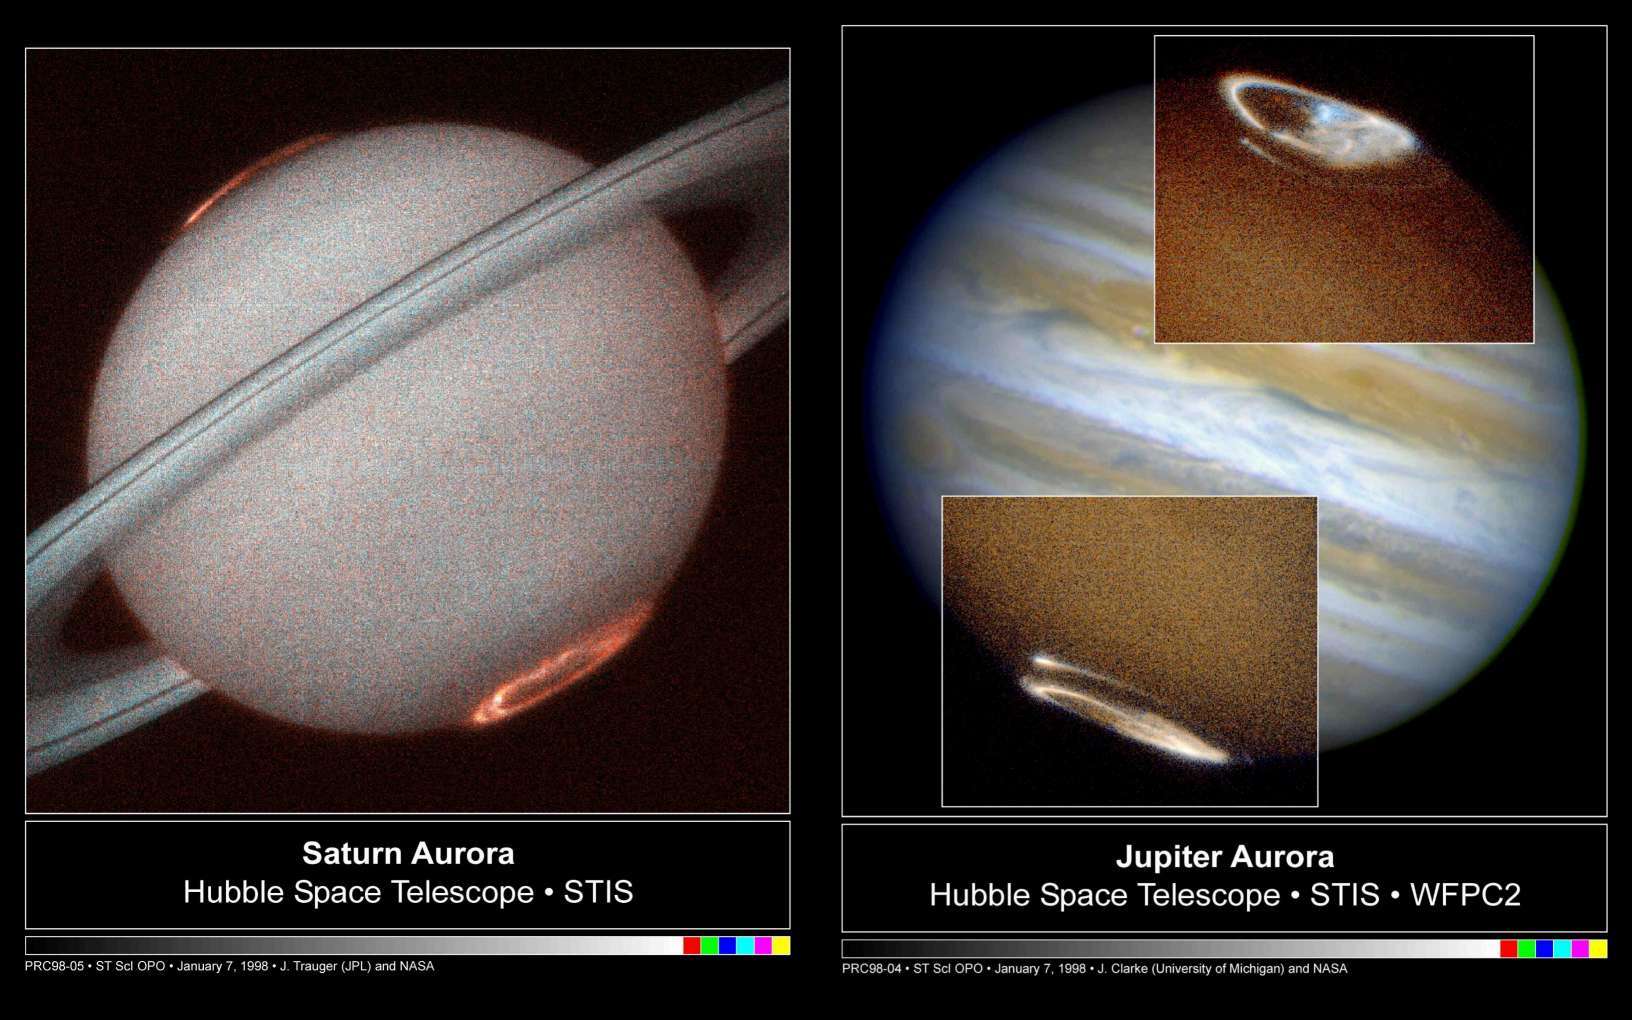 Ici vous pouvez voir les photographies de la planète Saturne et Jupiter prises par la NASA avec les deux trous polaires